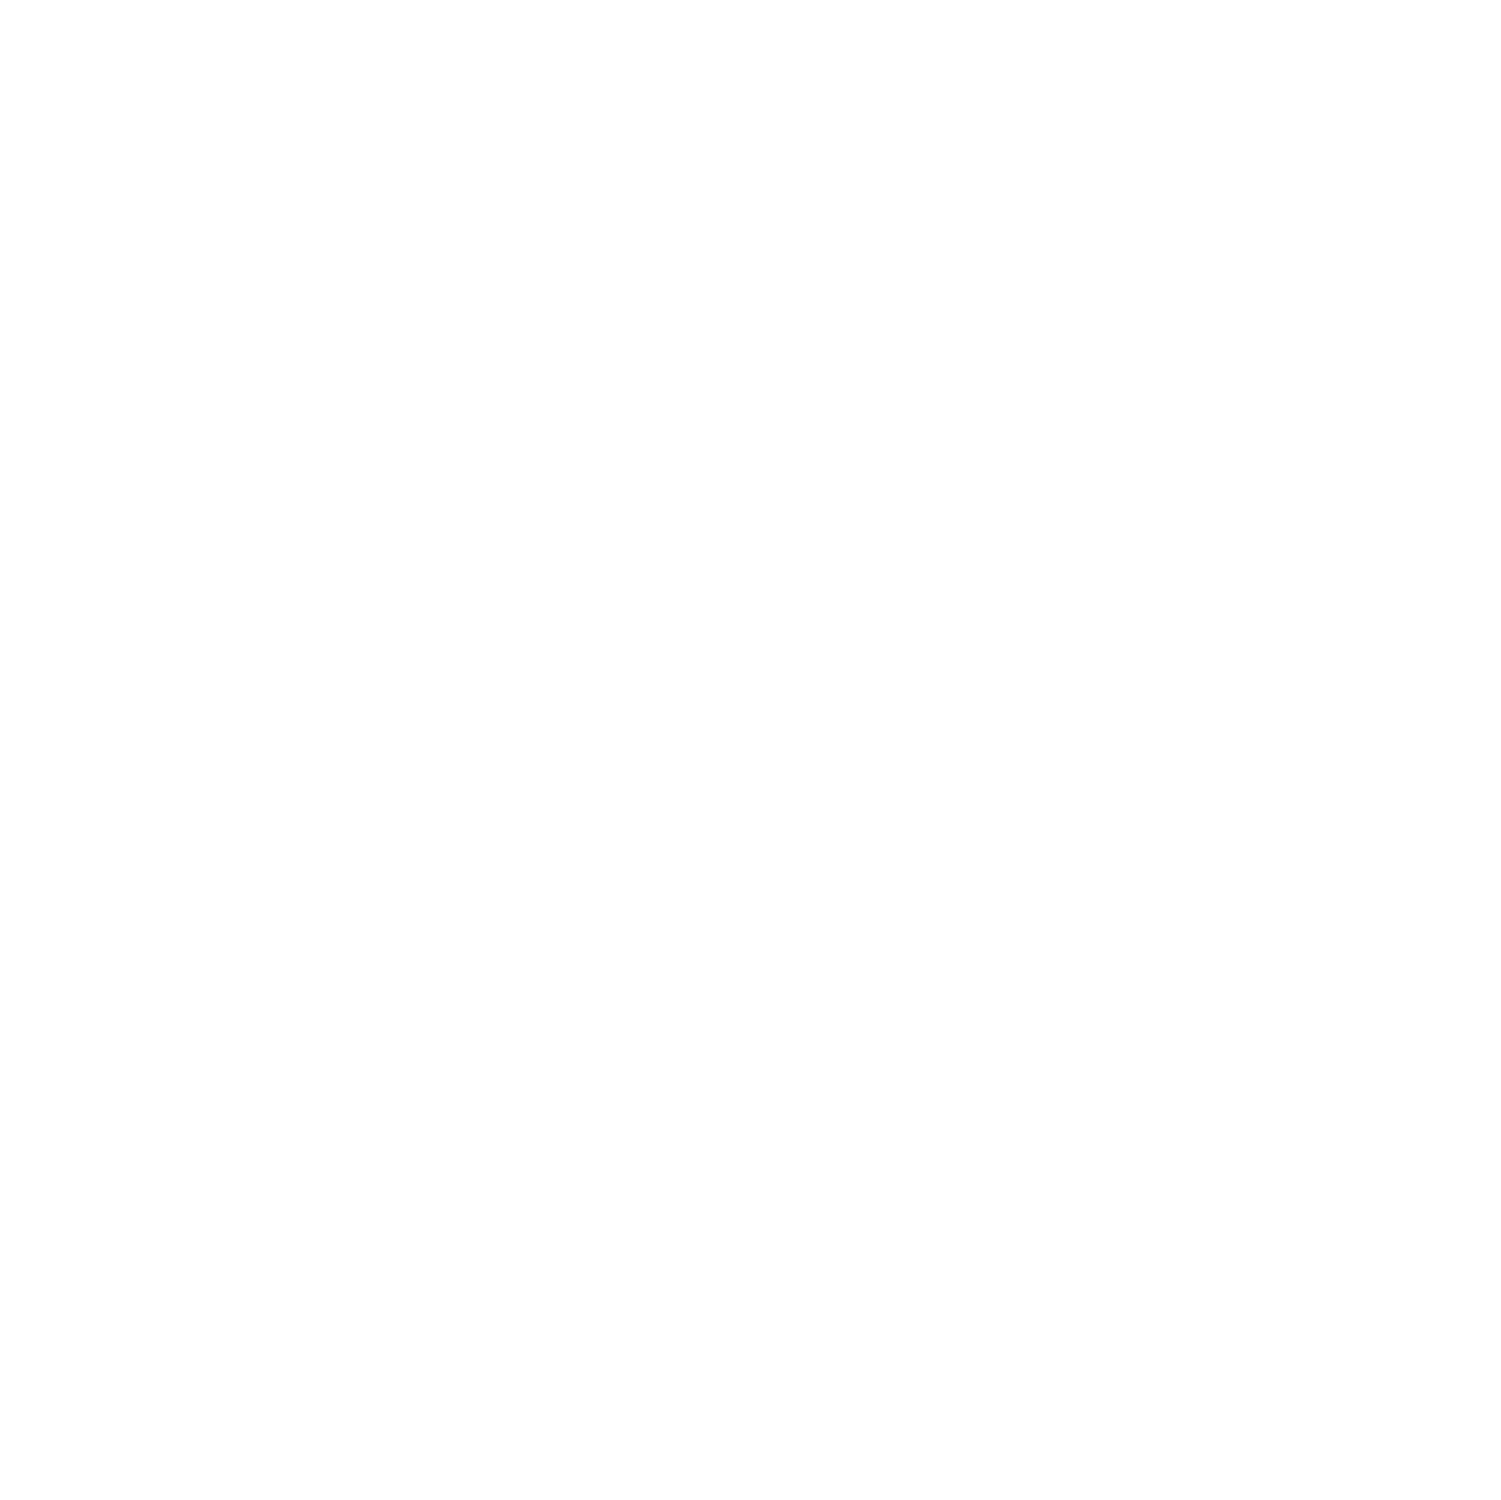 Hendrick Buick GMC Cary Dealership logo